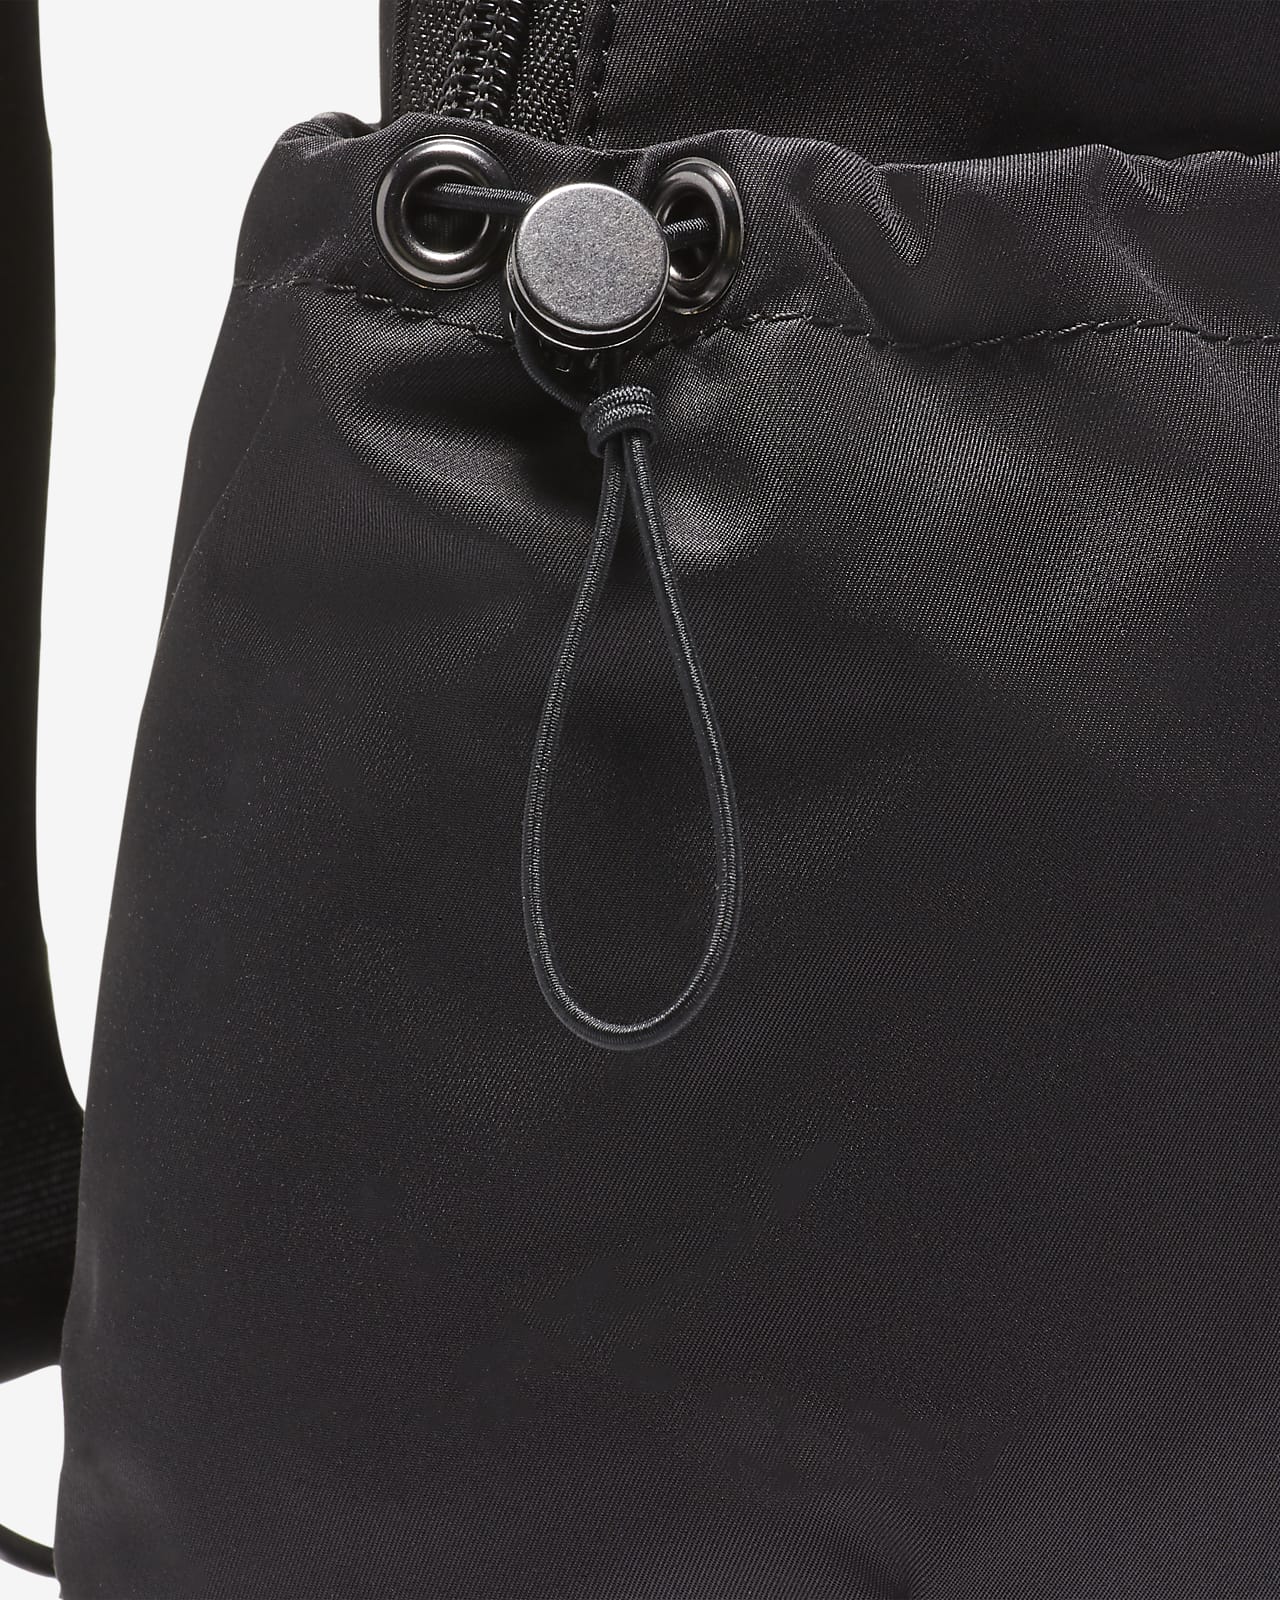 Nike Sportswear Backpack 'Futura Luxe' in Black